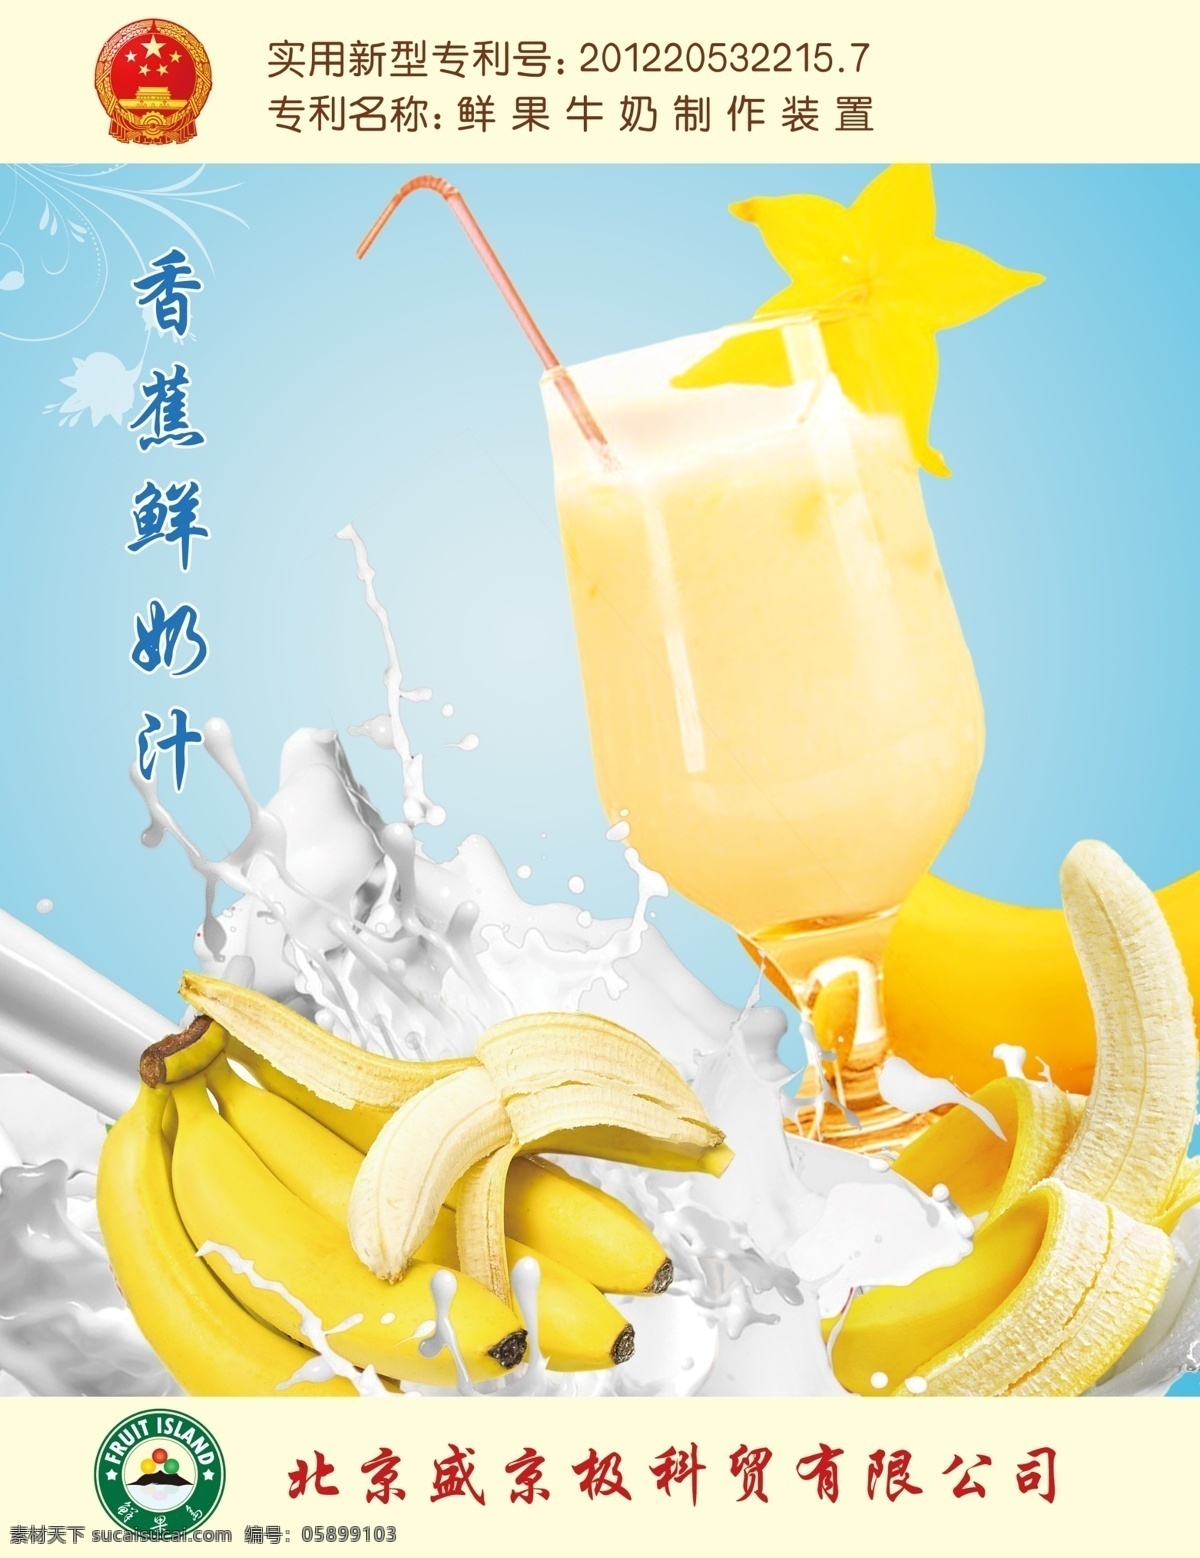 香蕉饮料海报 香蕉 香蕉饮料 香蕉汁 香蕉素材 广告设计模板 源文件